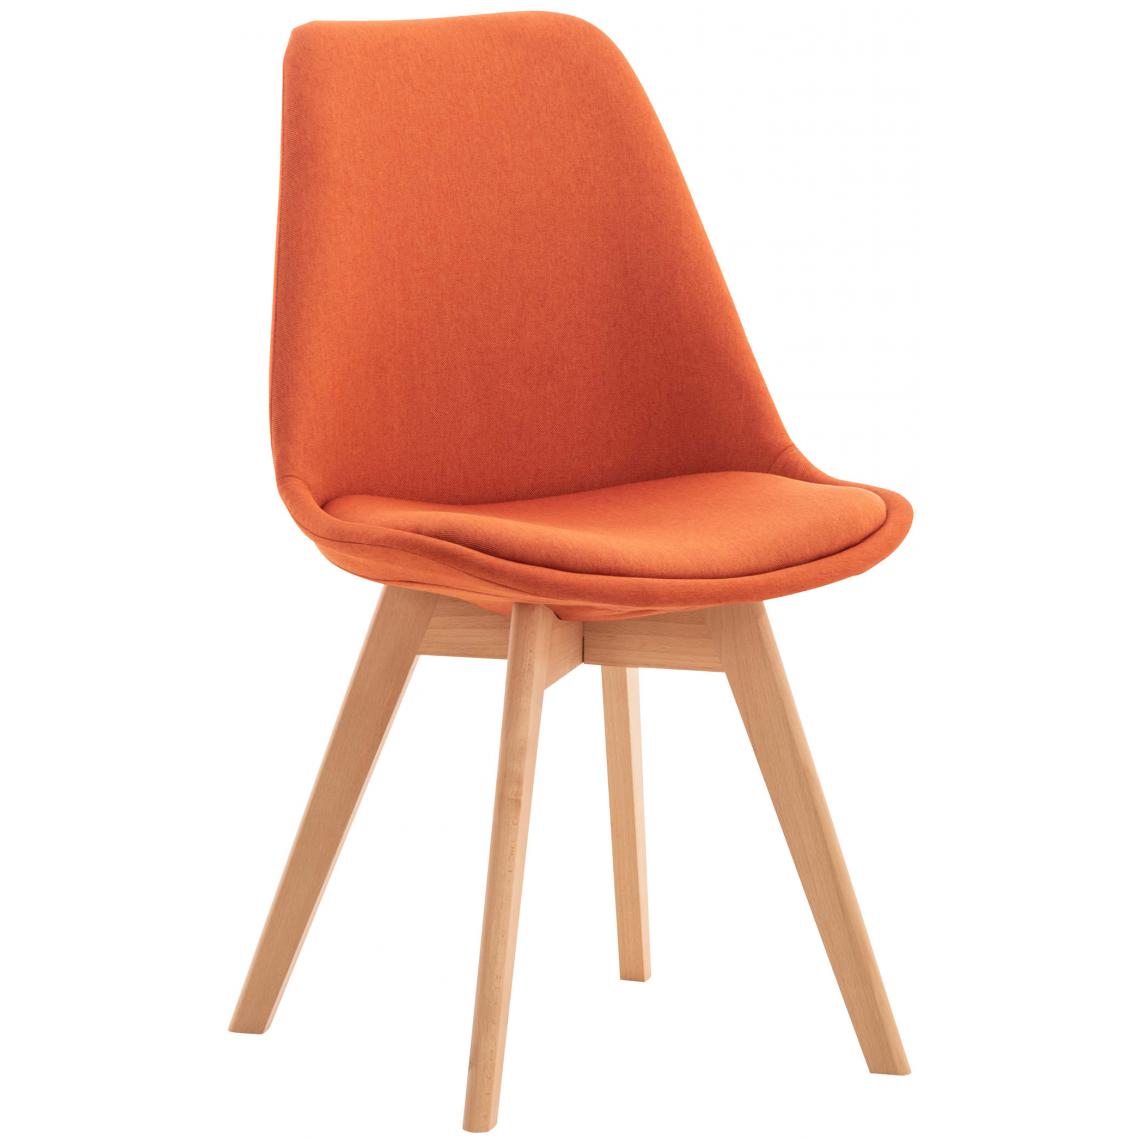 Icaverne - Stylé Chaise en tissu categorie Oulan-Bator couleur Orange - Chaises